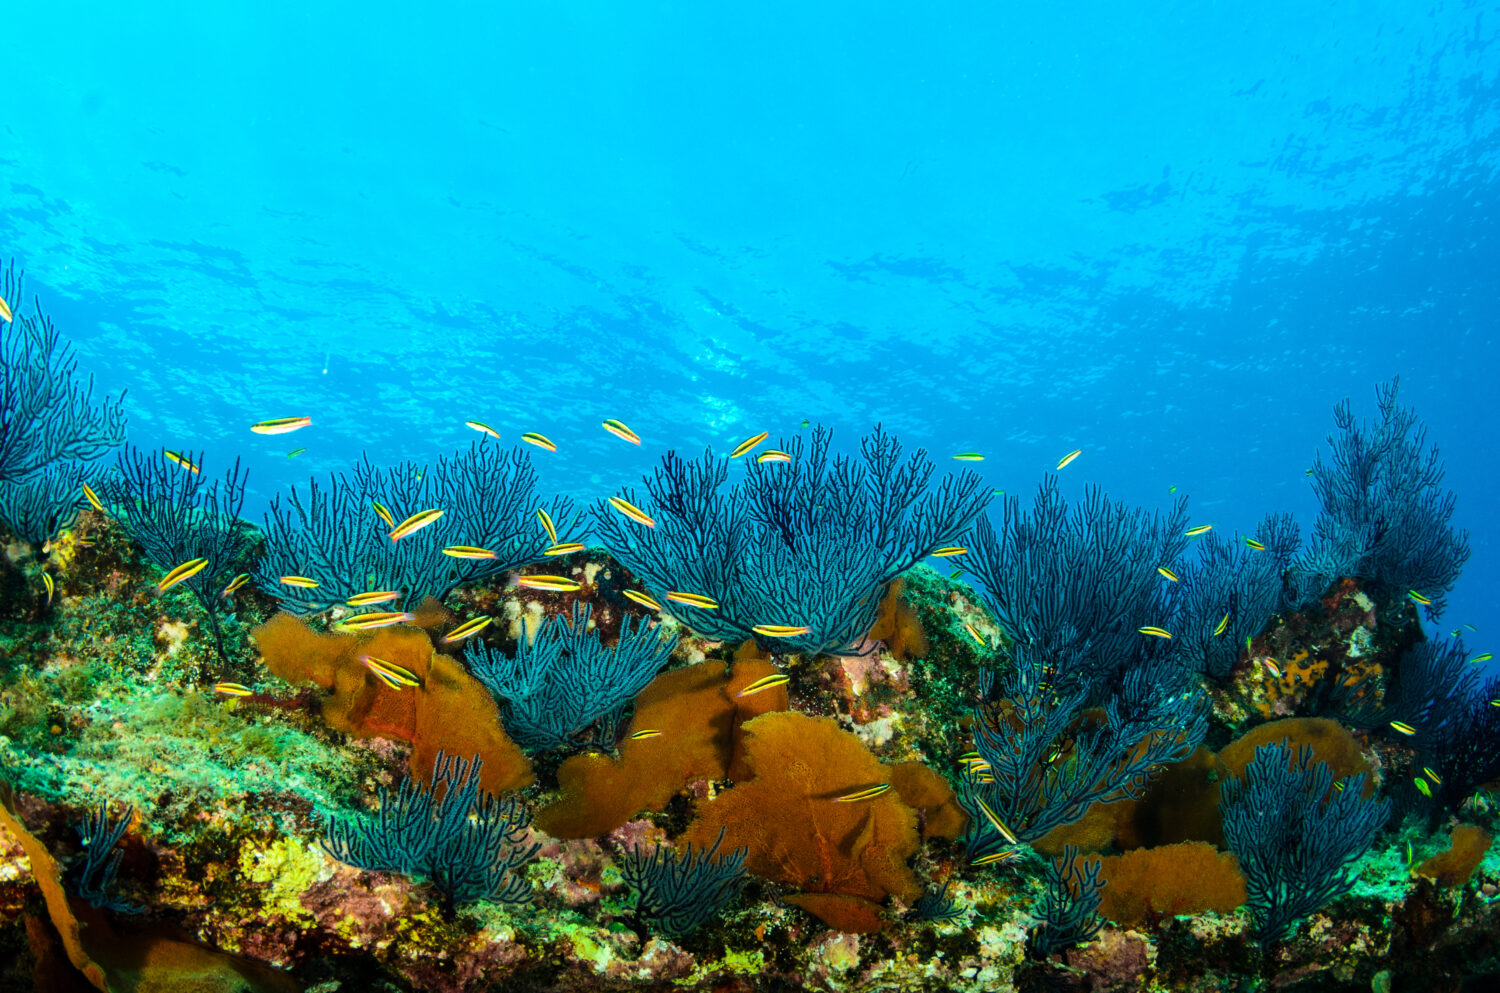 Paesaggi della barriera corallina del Mare di Cortez.  Parco Nazionale Cabo Pulmo, Baja California Sur, Messico.  L'acquario del mondo.